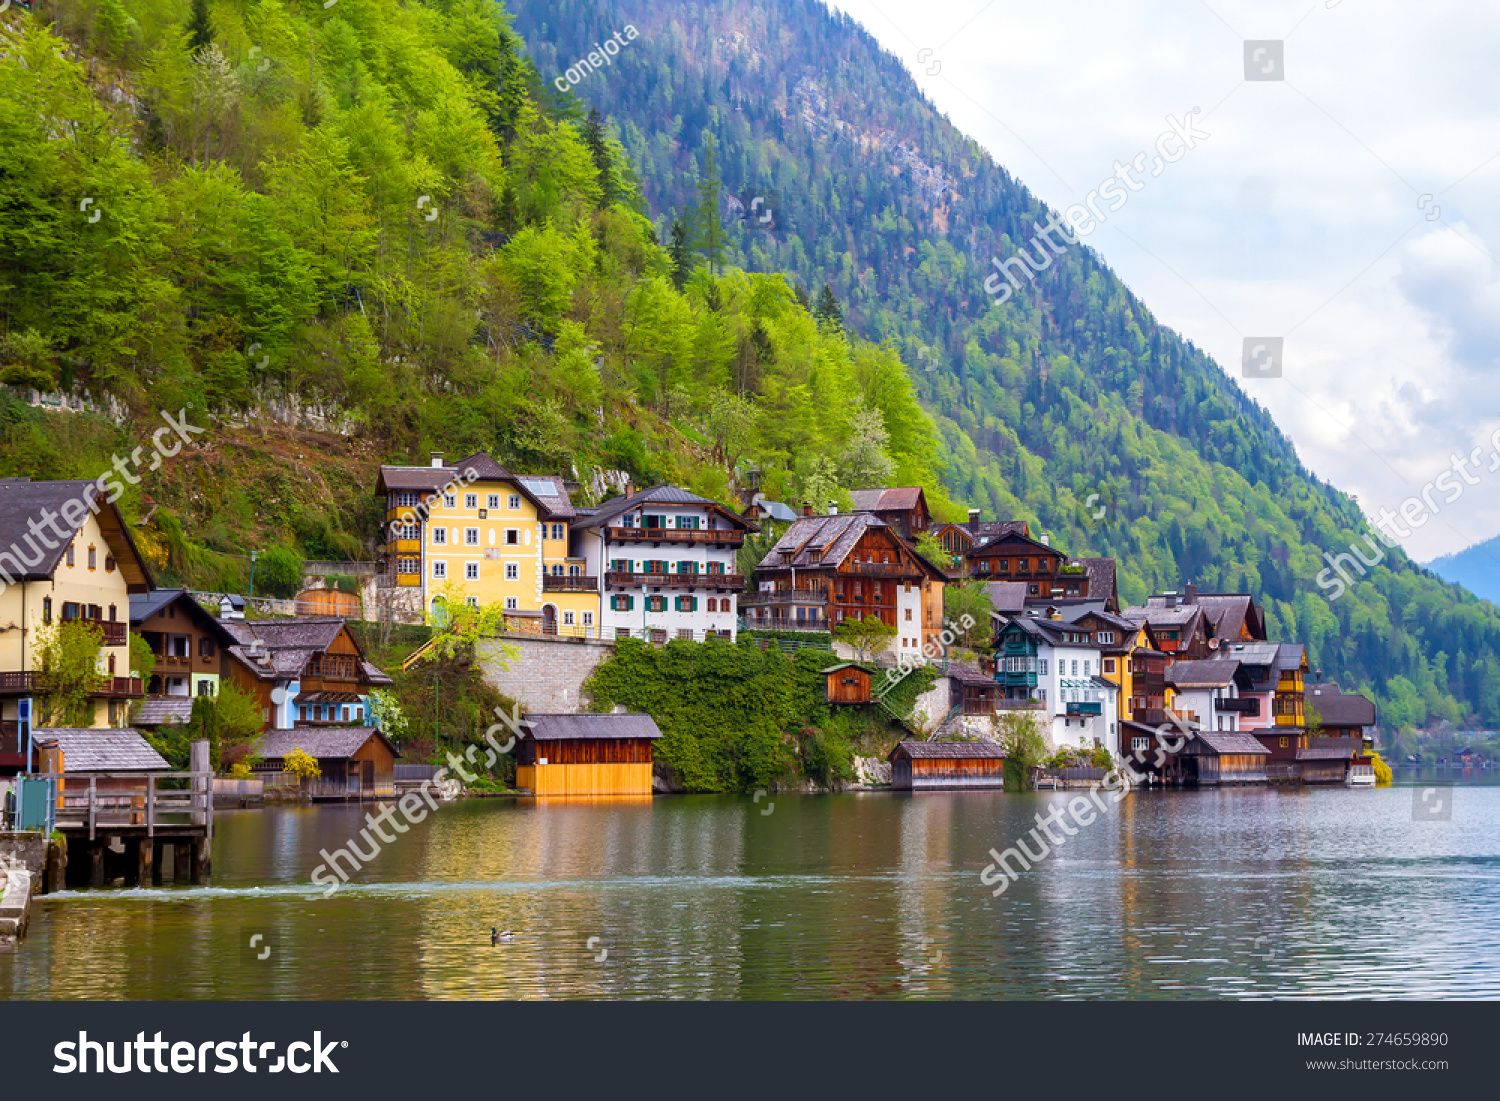 Hallstatt, village in the mountains in Austria
 #274659890